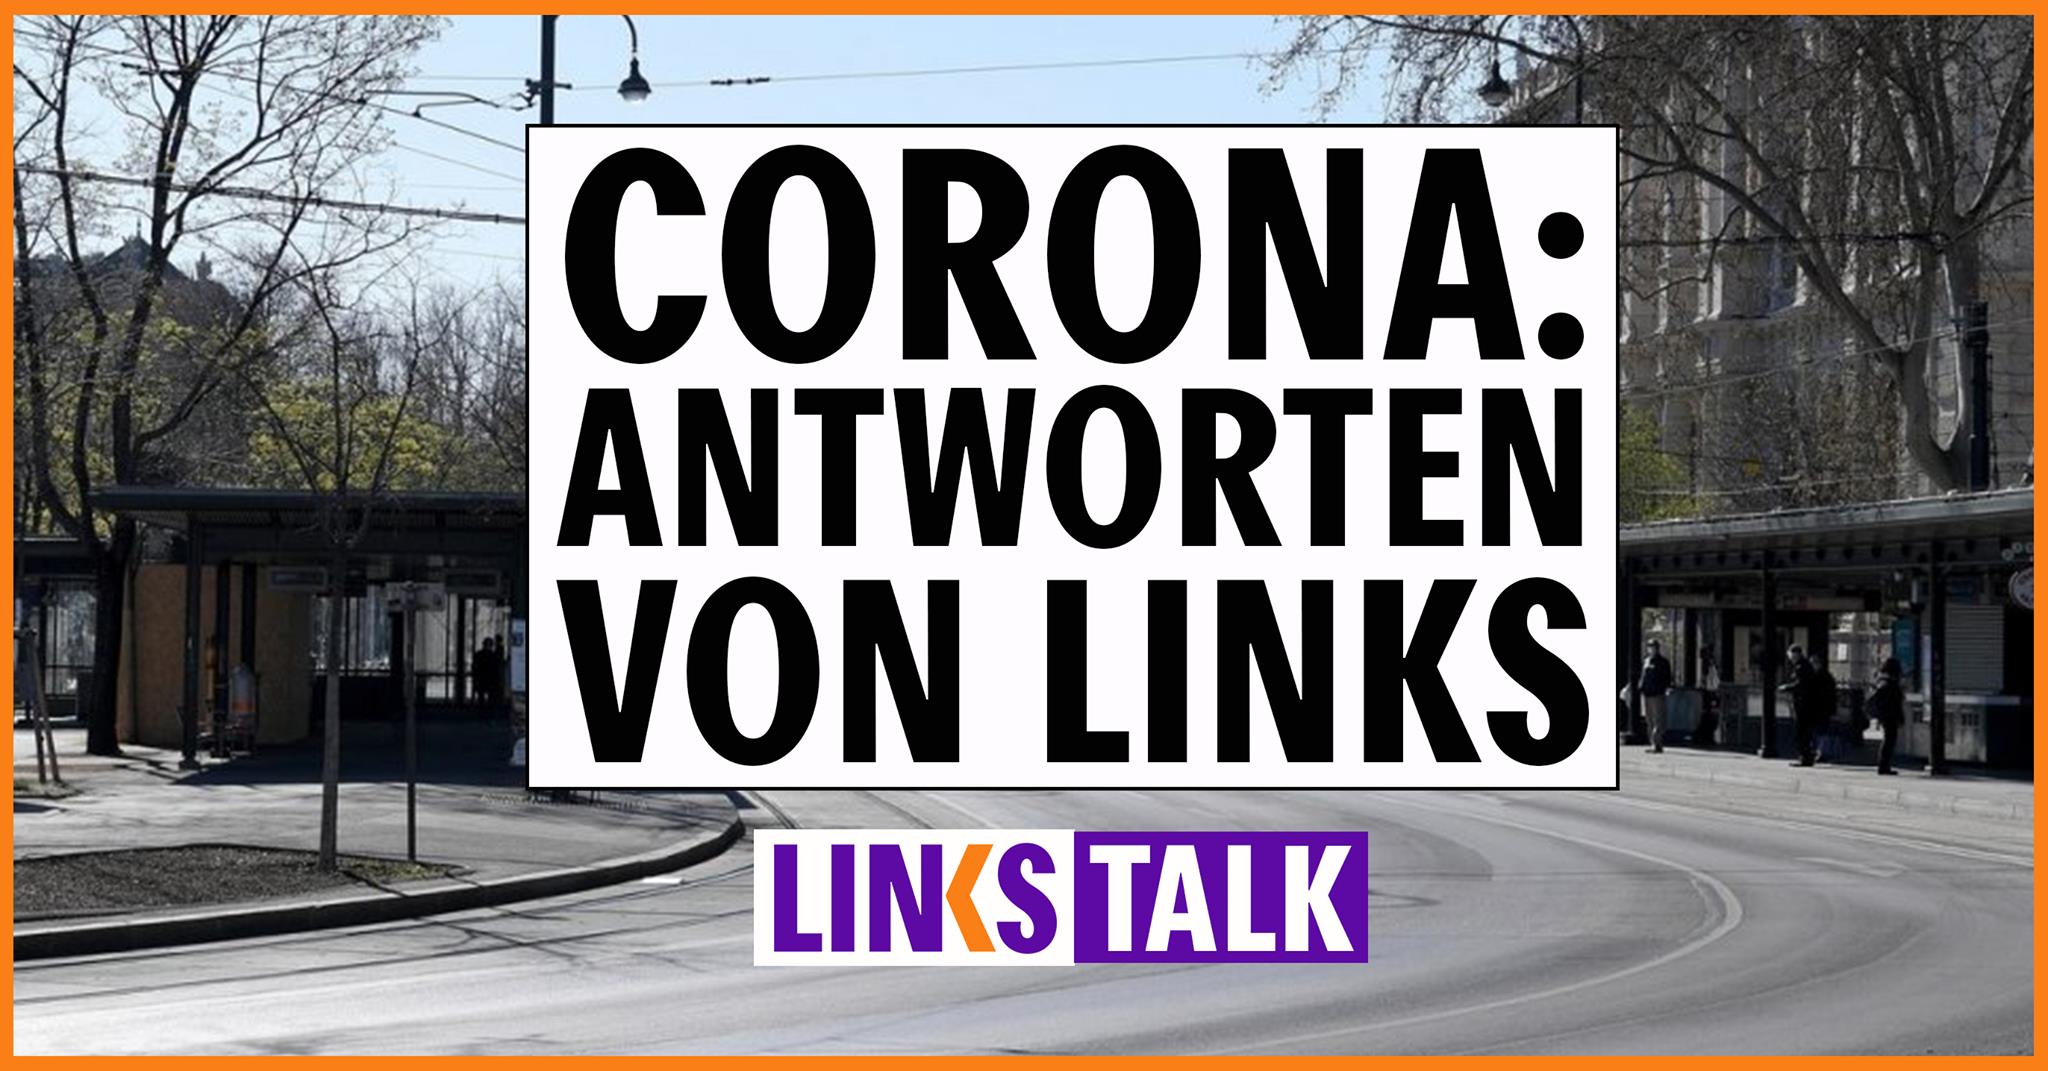 LINKS Talk: Linke Antworten auf die Corona-Krise